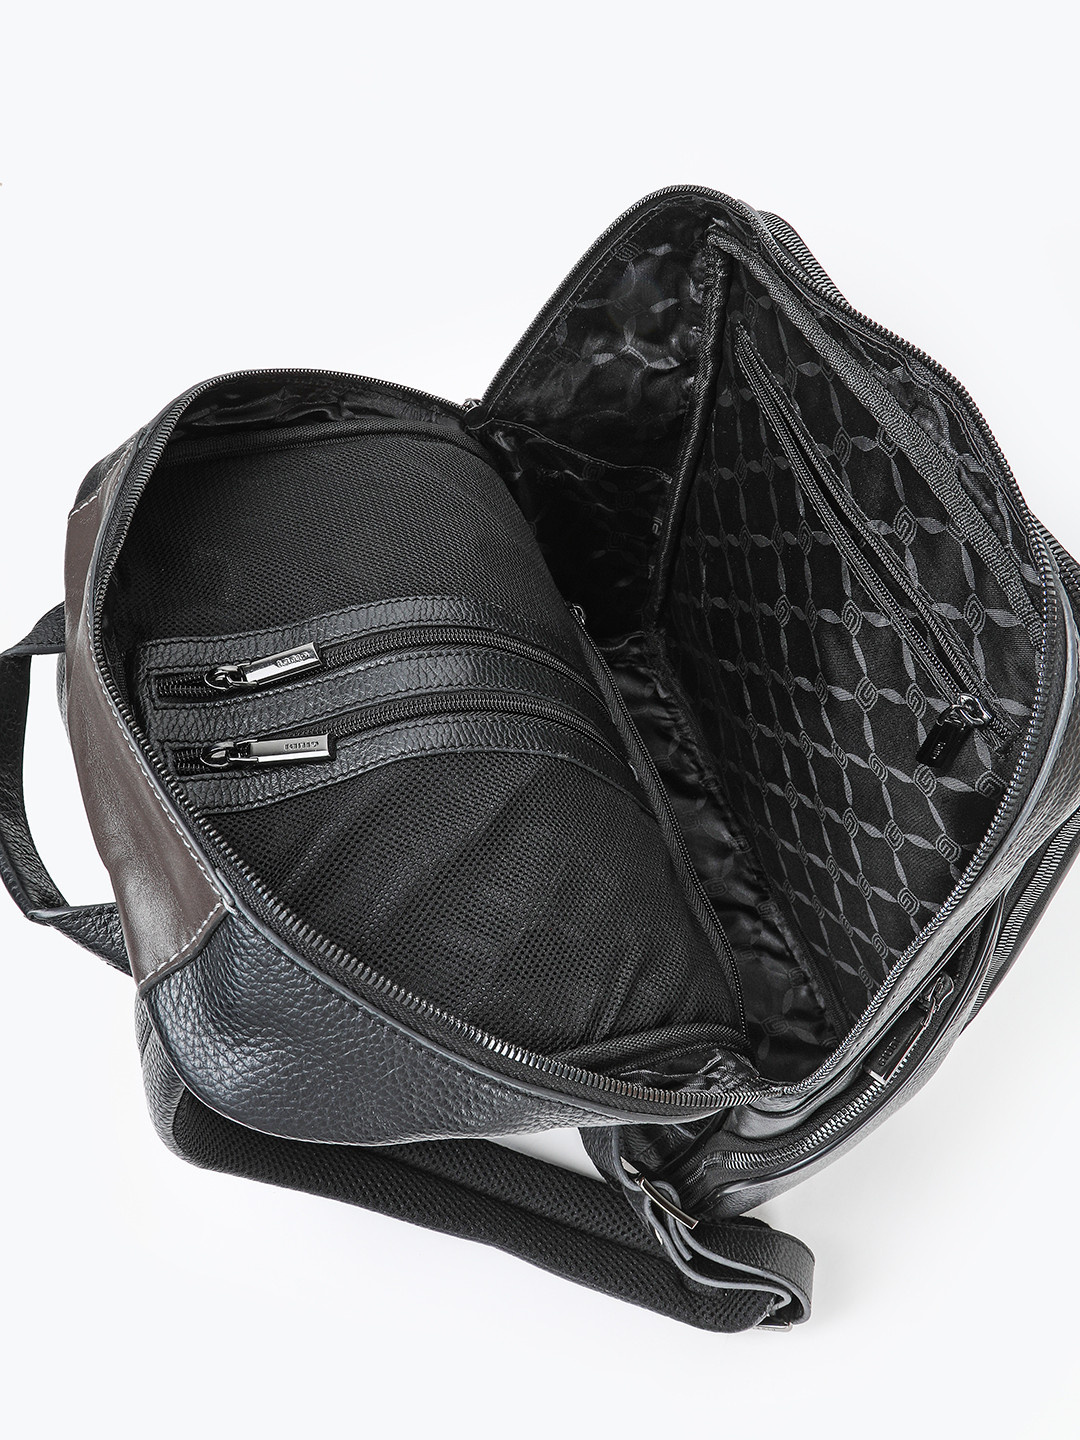 Фото Мужской рюкзак из натуральной кожи черного цвета Рюкзаки